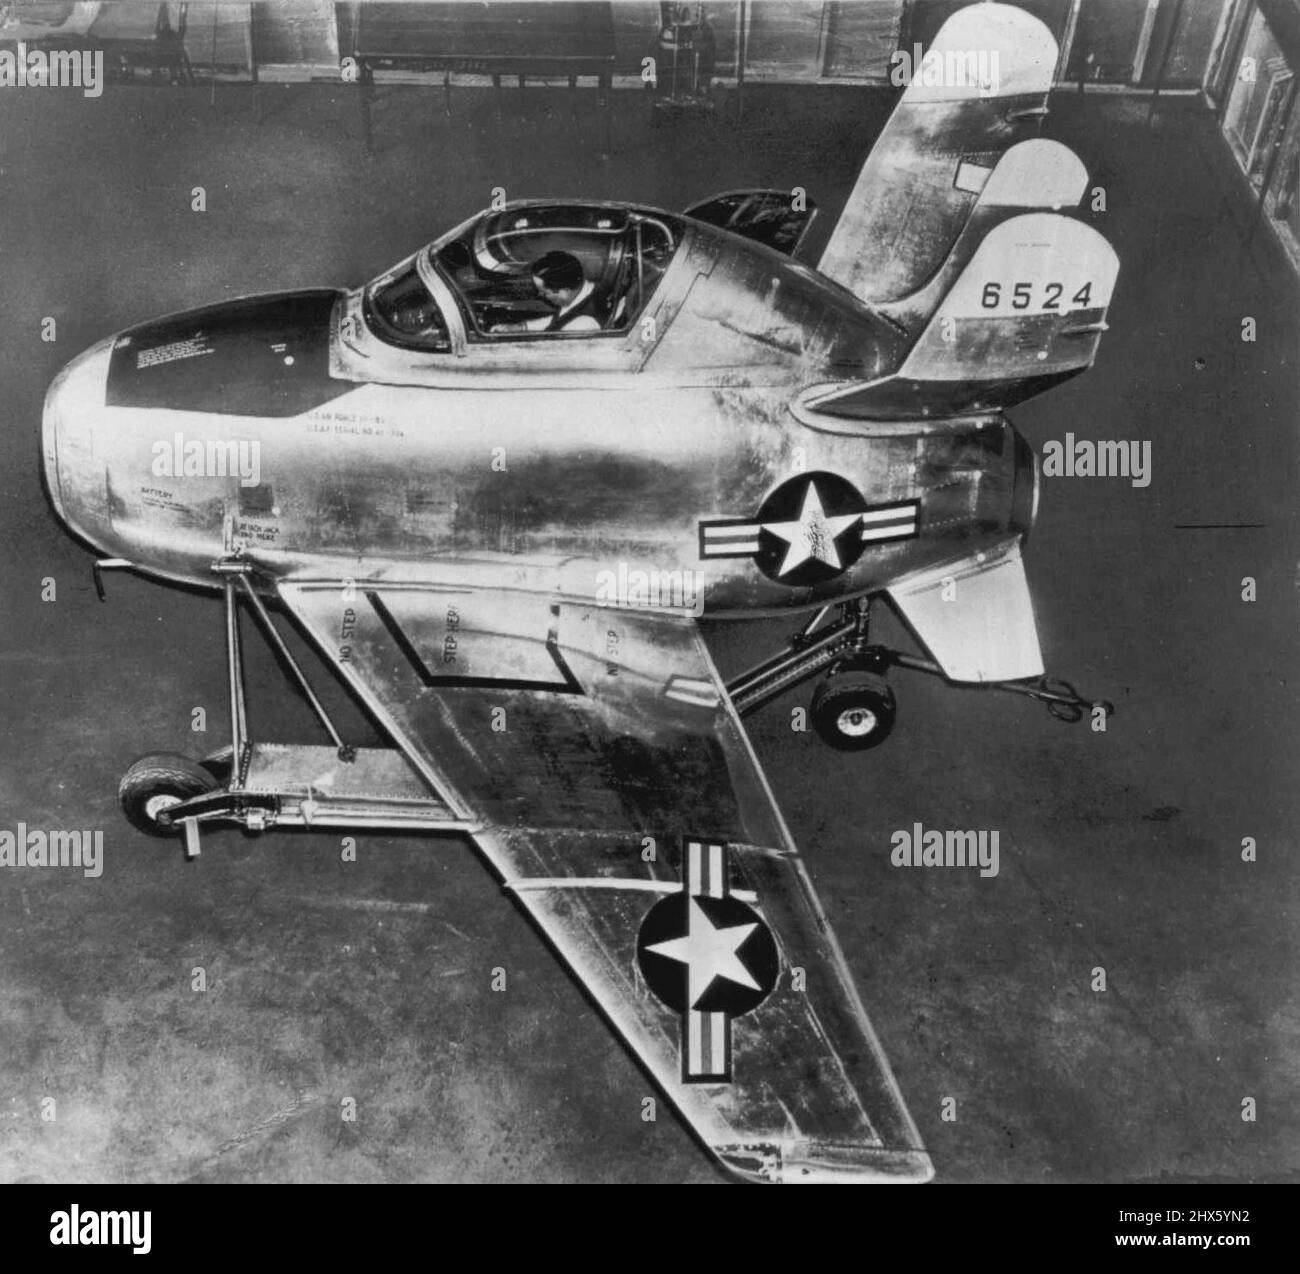 „Parasite“-Kampfflugzeug – der XF-85 (oben) ist auf einem speziellen Dolly montiert, dem neuen „Parasite“-Kampfflugzeug der US-Luftwaffe, das für Boden- und Windtunneltests bereit ist. Das Flugzeug hat kein Fahrwerk und ist so konzipiert, dass es in die Bombenbucht einer B-36 passt, von der aus alle Landungen und Starts mittels eines Anschlagmechanismus erfolgen. Craft hat eine Flügelspannweite von 21 Fuß und ist 15 Fuß lang. Die Flügel werden innerhalb der Bombenbucht zurückgefaltet. Die ungerade Heckbaugruppe sorgt für maximale Flugstabilität und lässt es dennoch zu Stockfoto